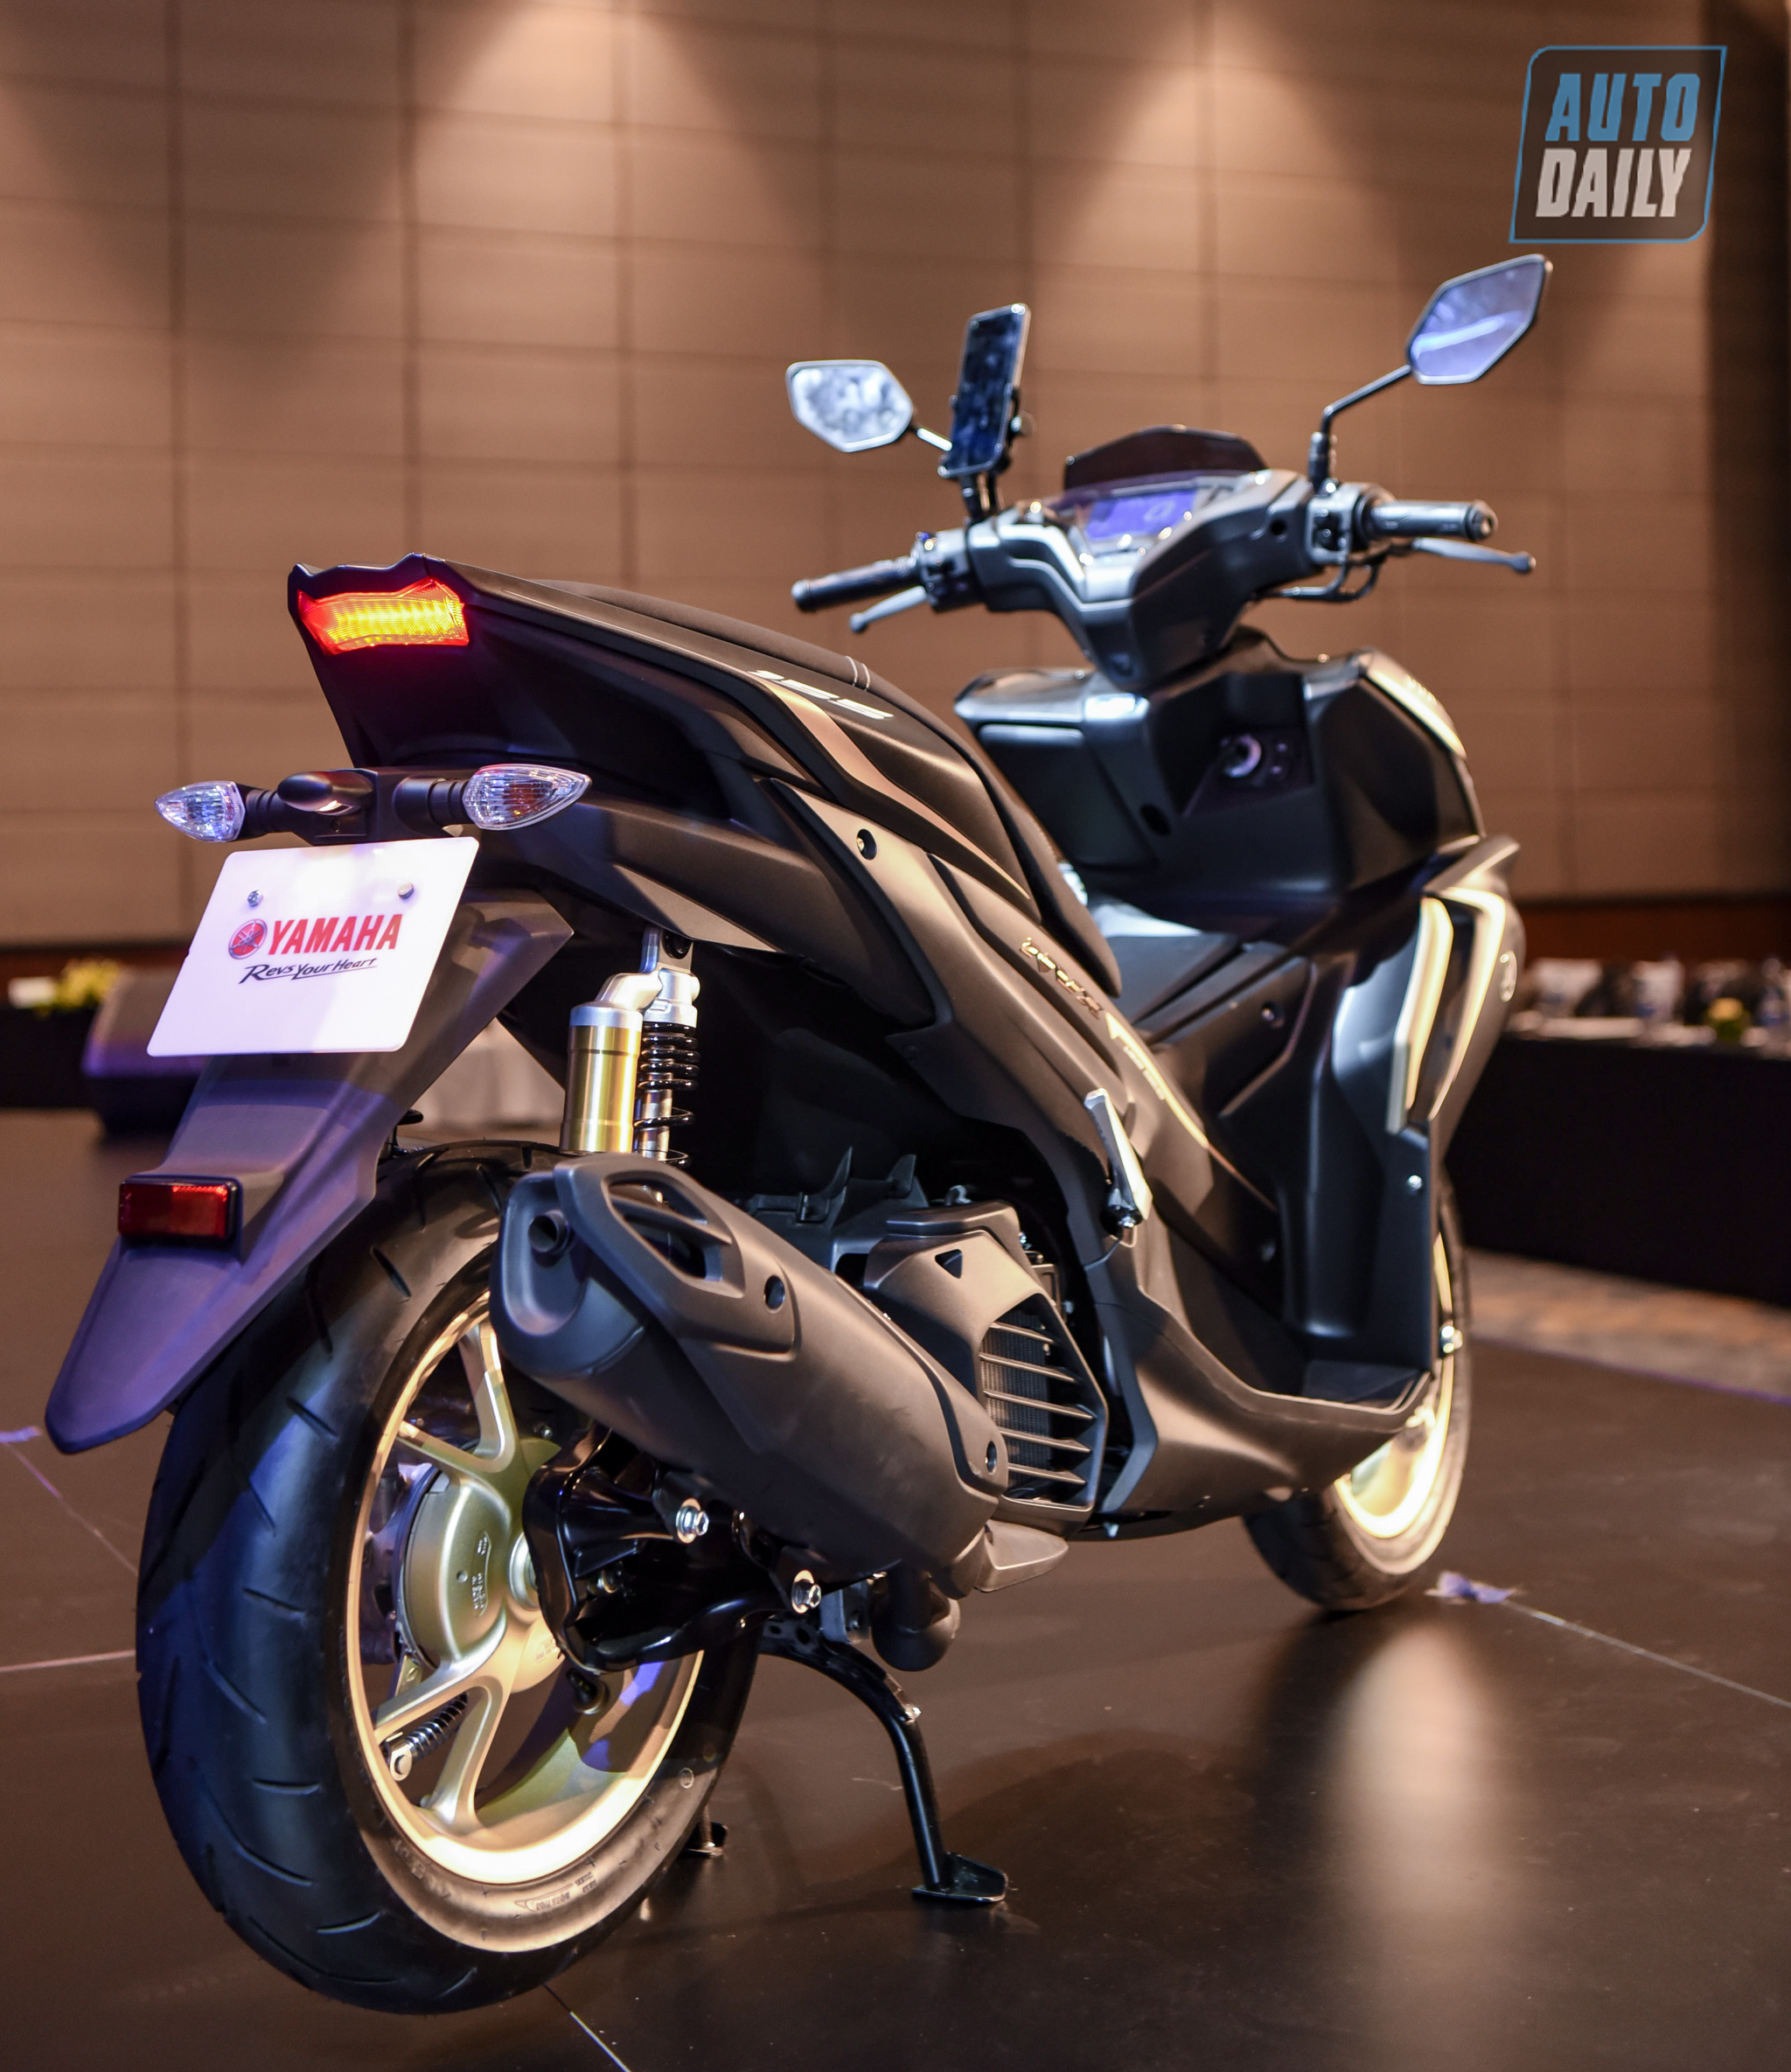 Chi tiết xe tay ga thể thao Yamaha NVX 155 2021 giá từ 53 triệu đồng yamaha-nvx-29.jpg